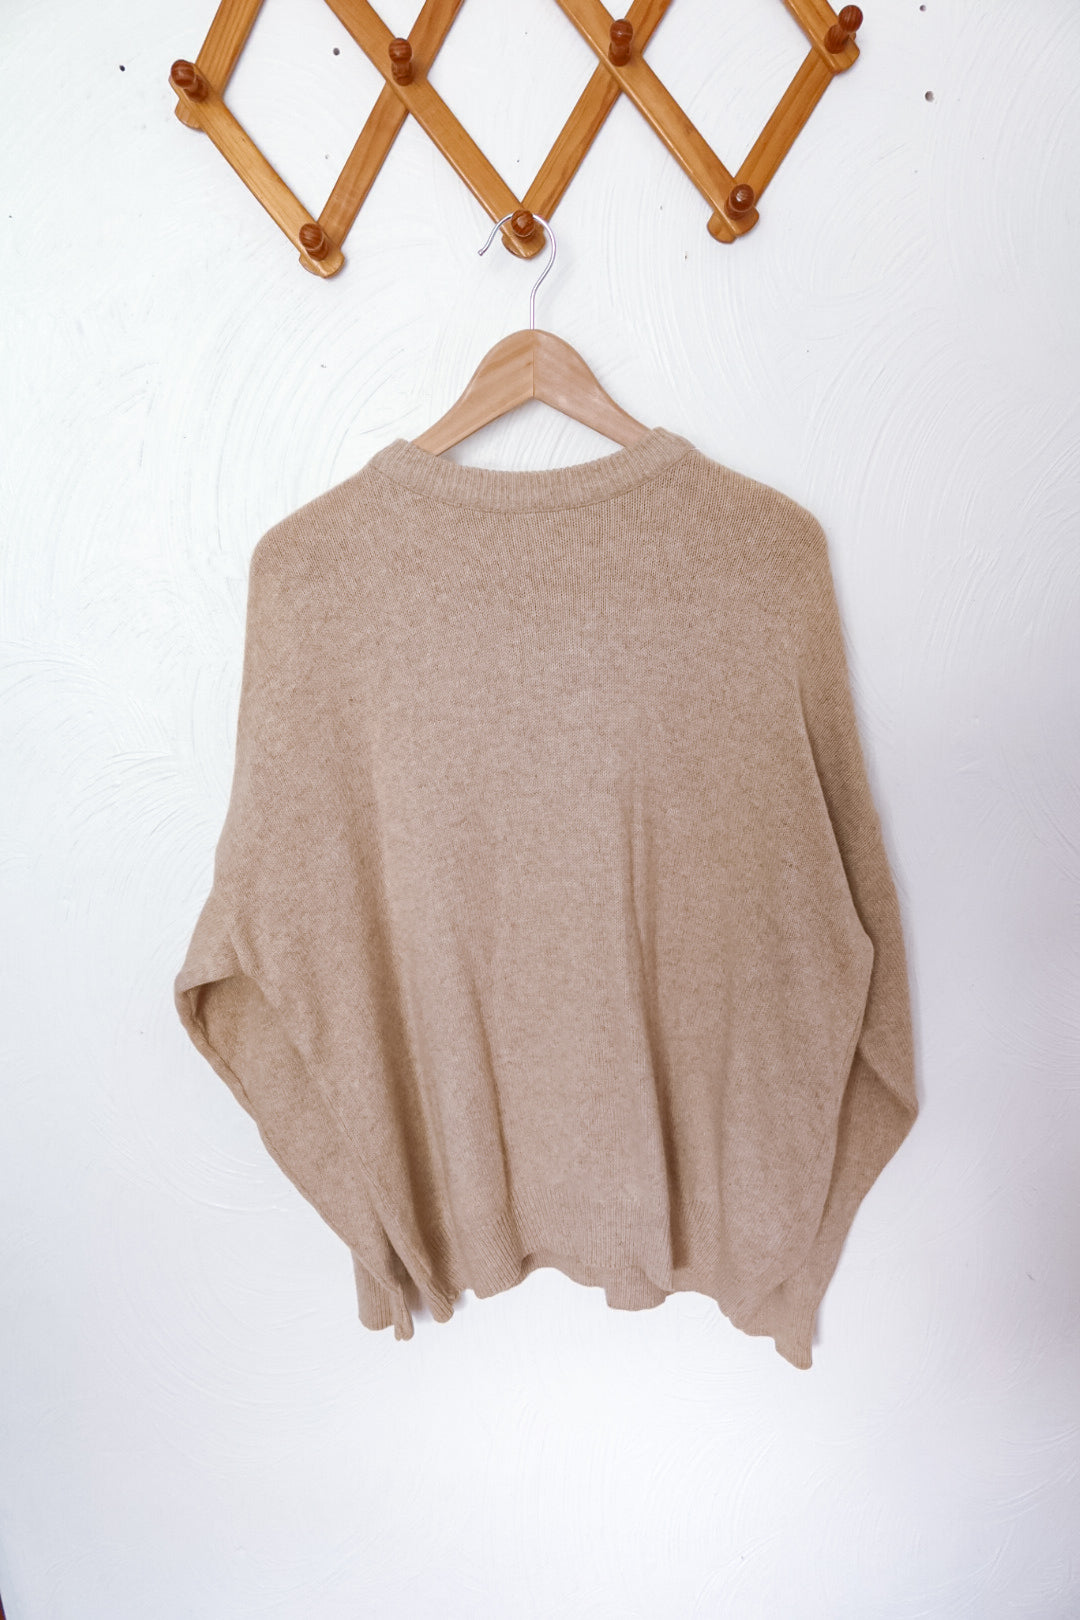 Neutral Sweater (L)